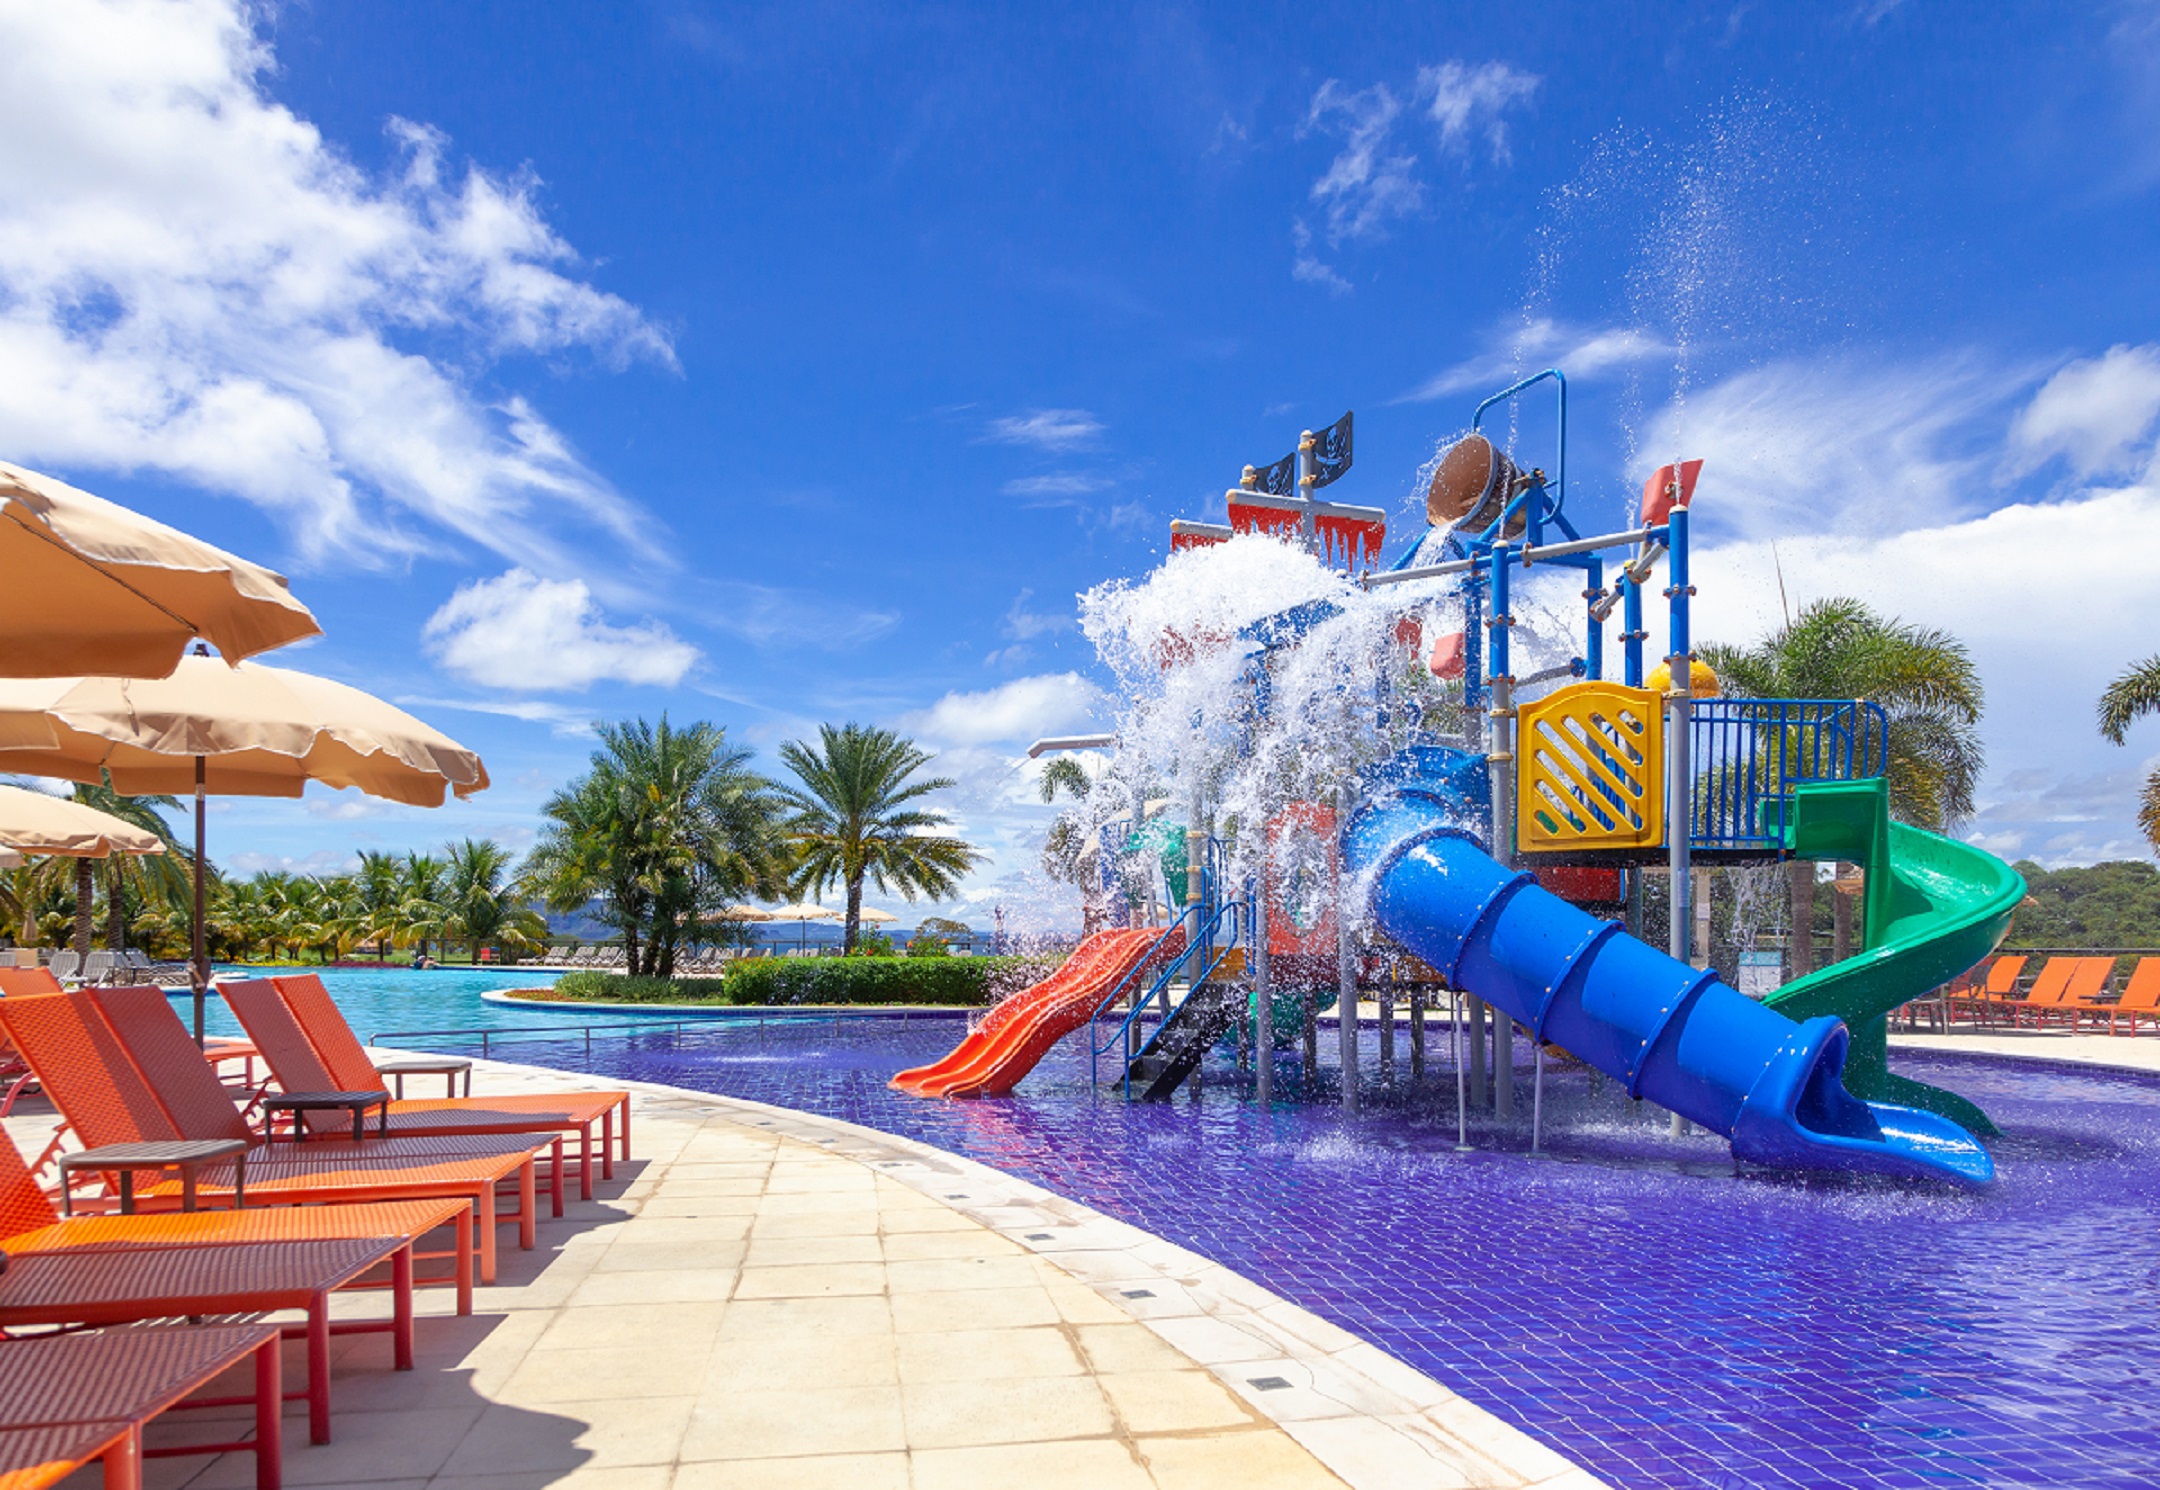 Piscina Infantil e Parque Aquático Malai Manso Resort